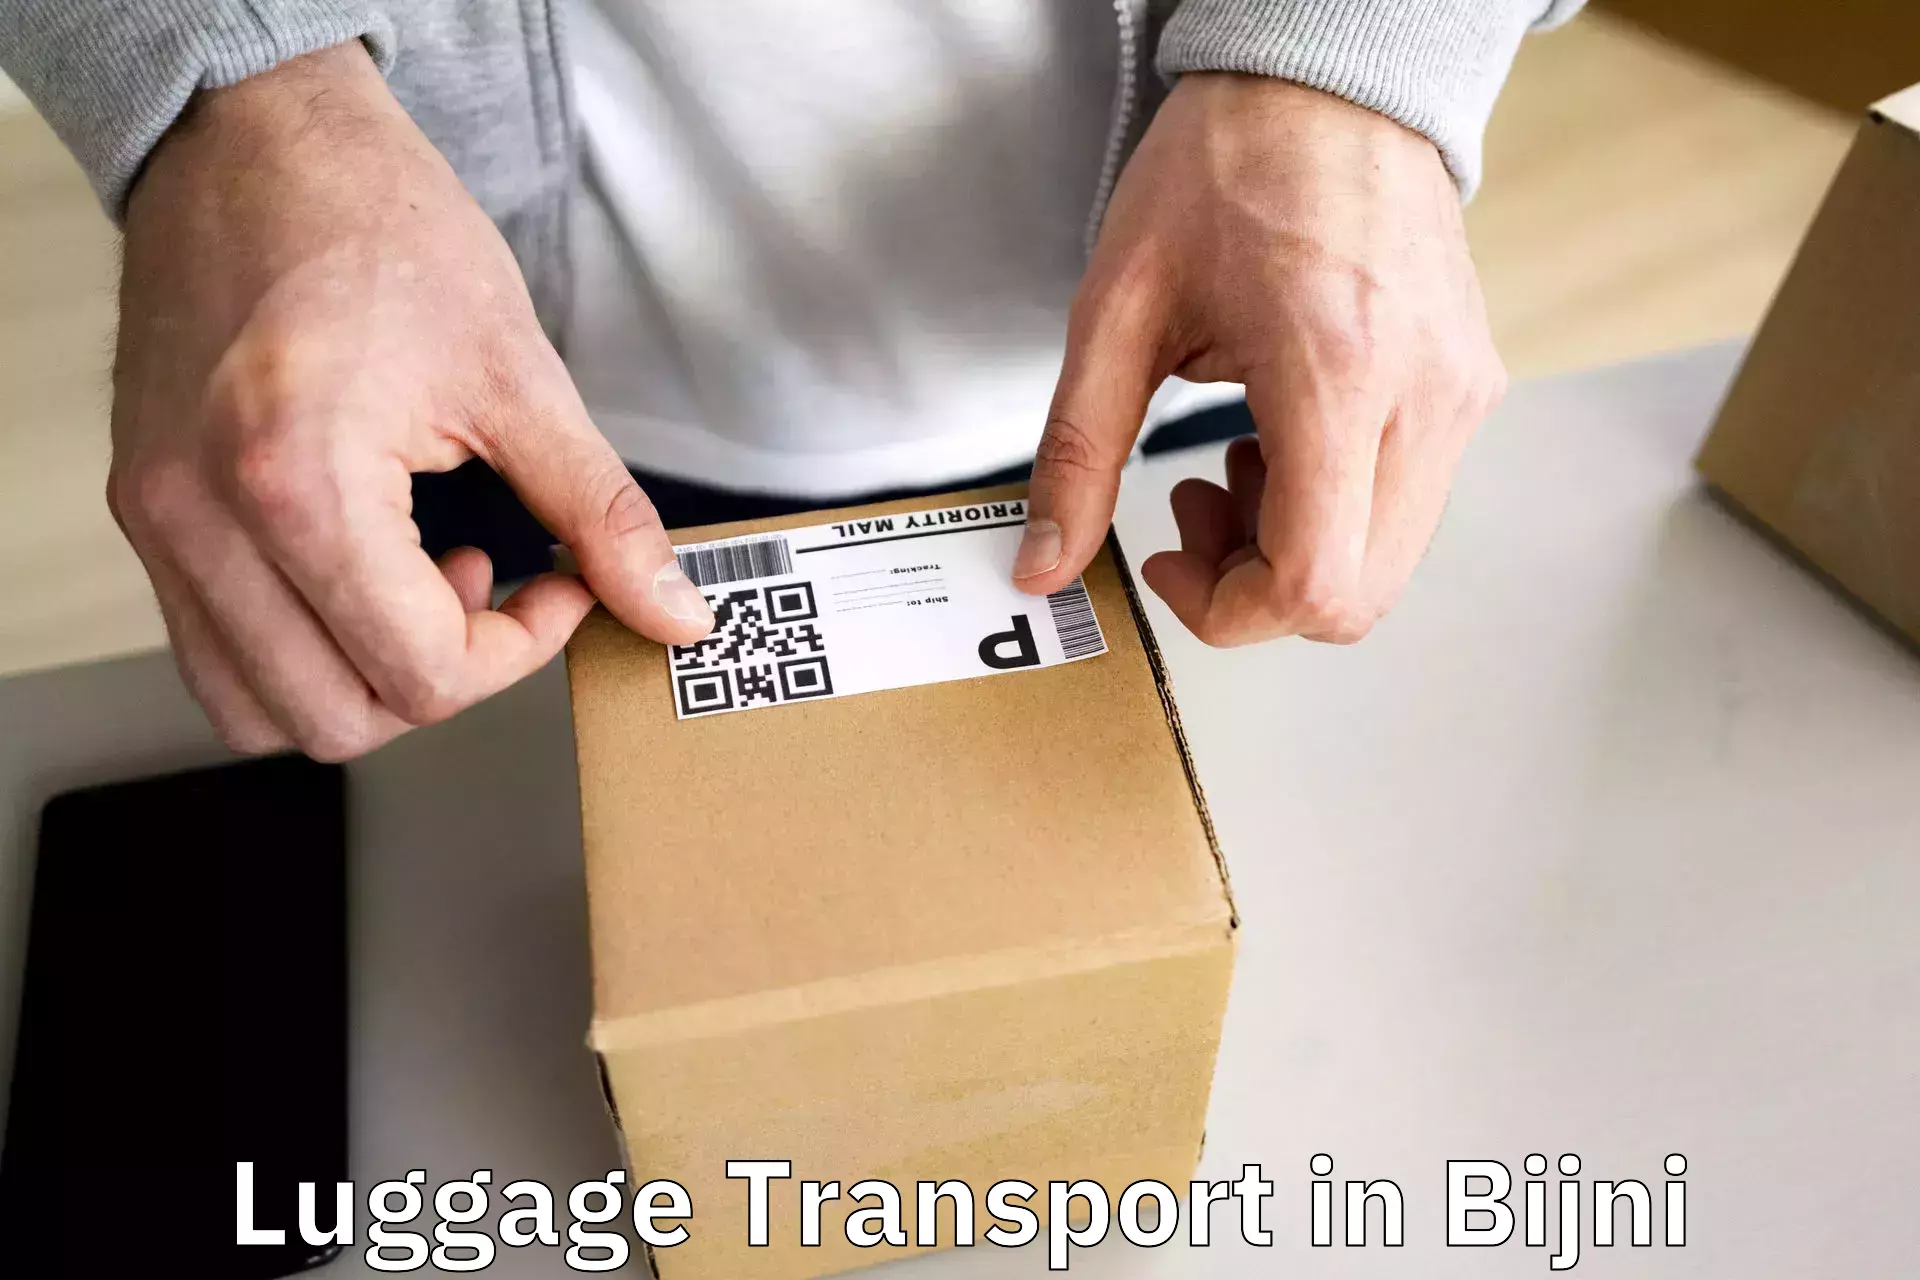 Multi-destination luggage transport in Bijni